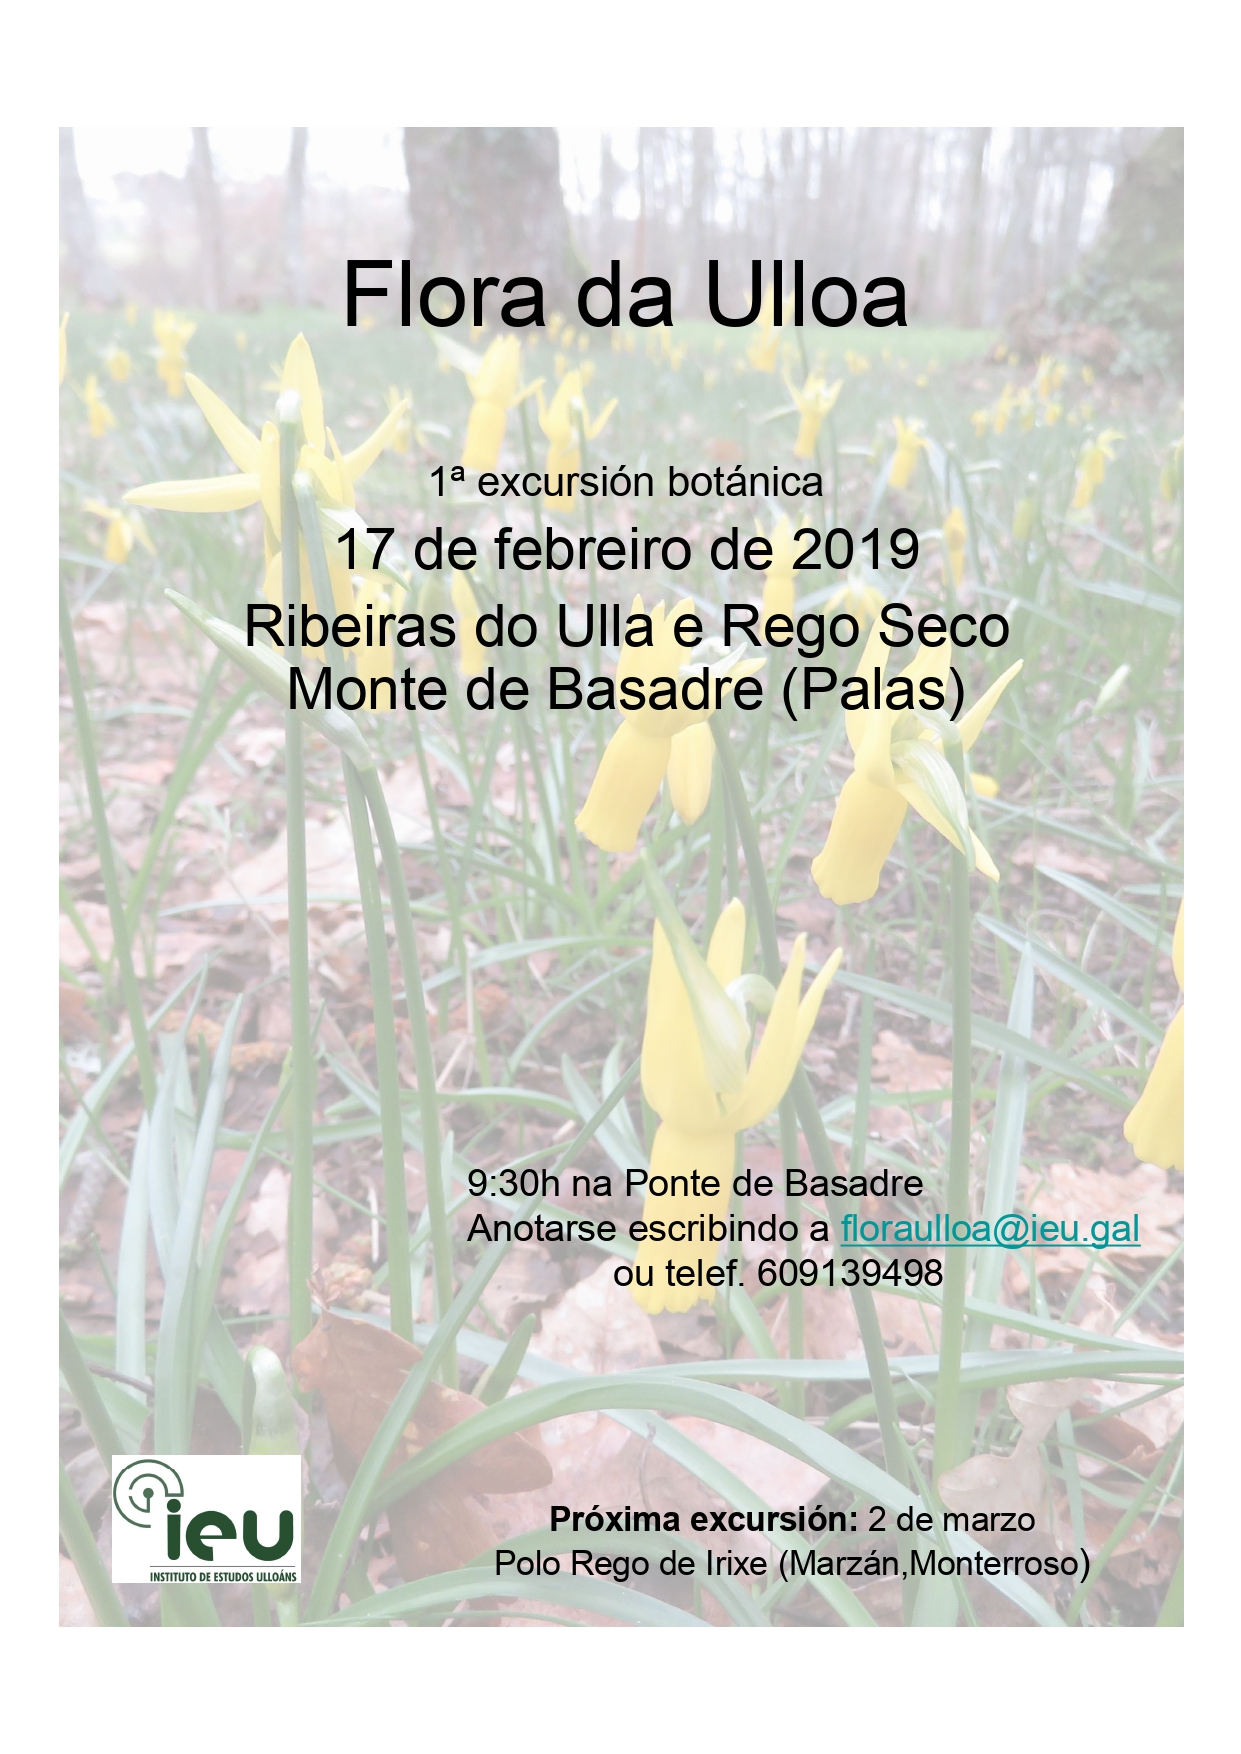 1ª exc Flora da Ulloa, Instituto de Estudos Ulloáns